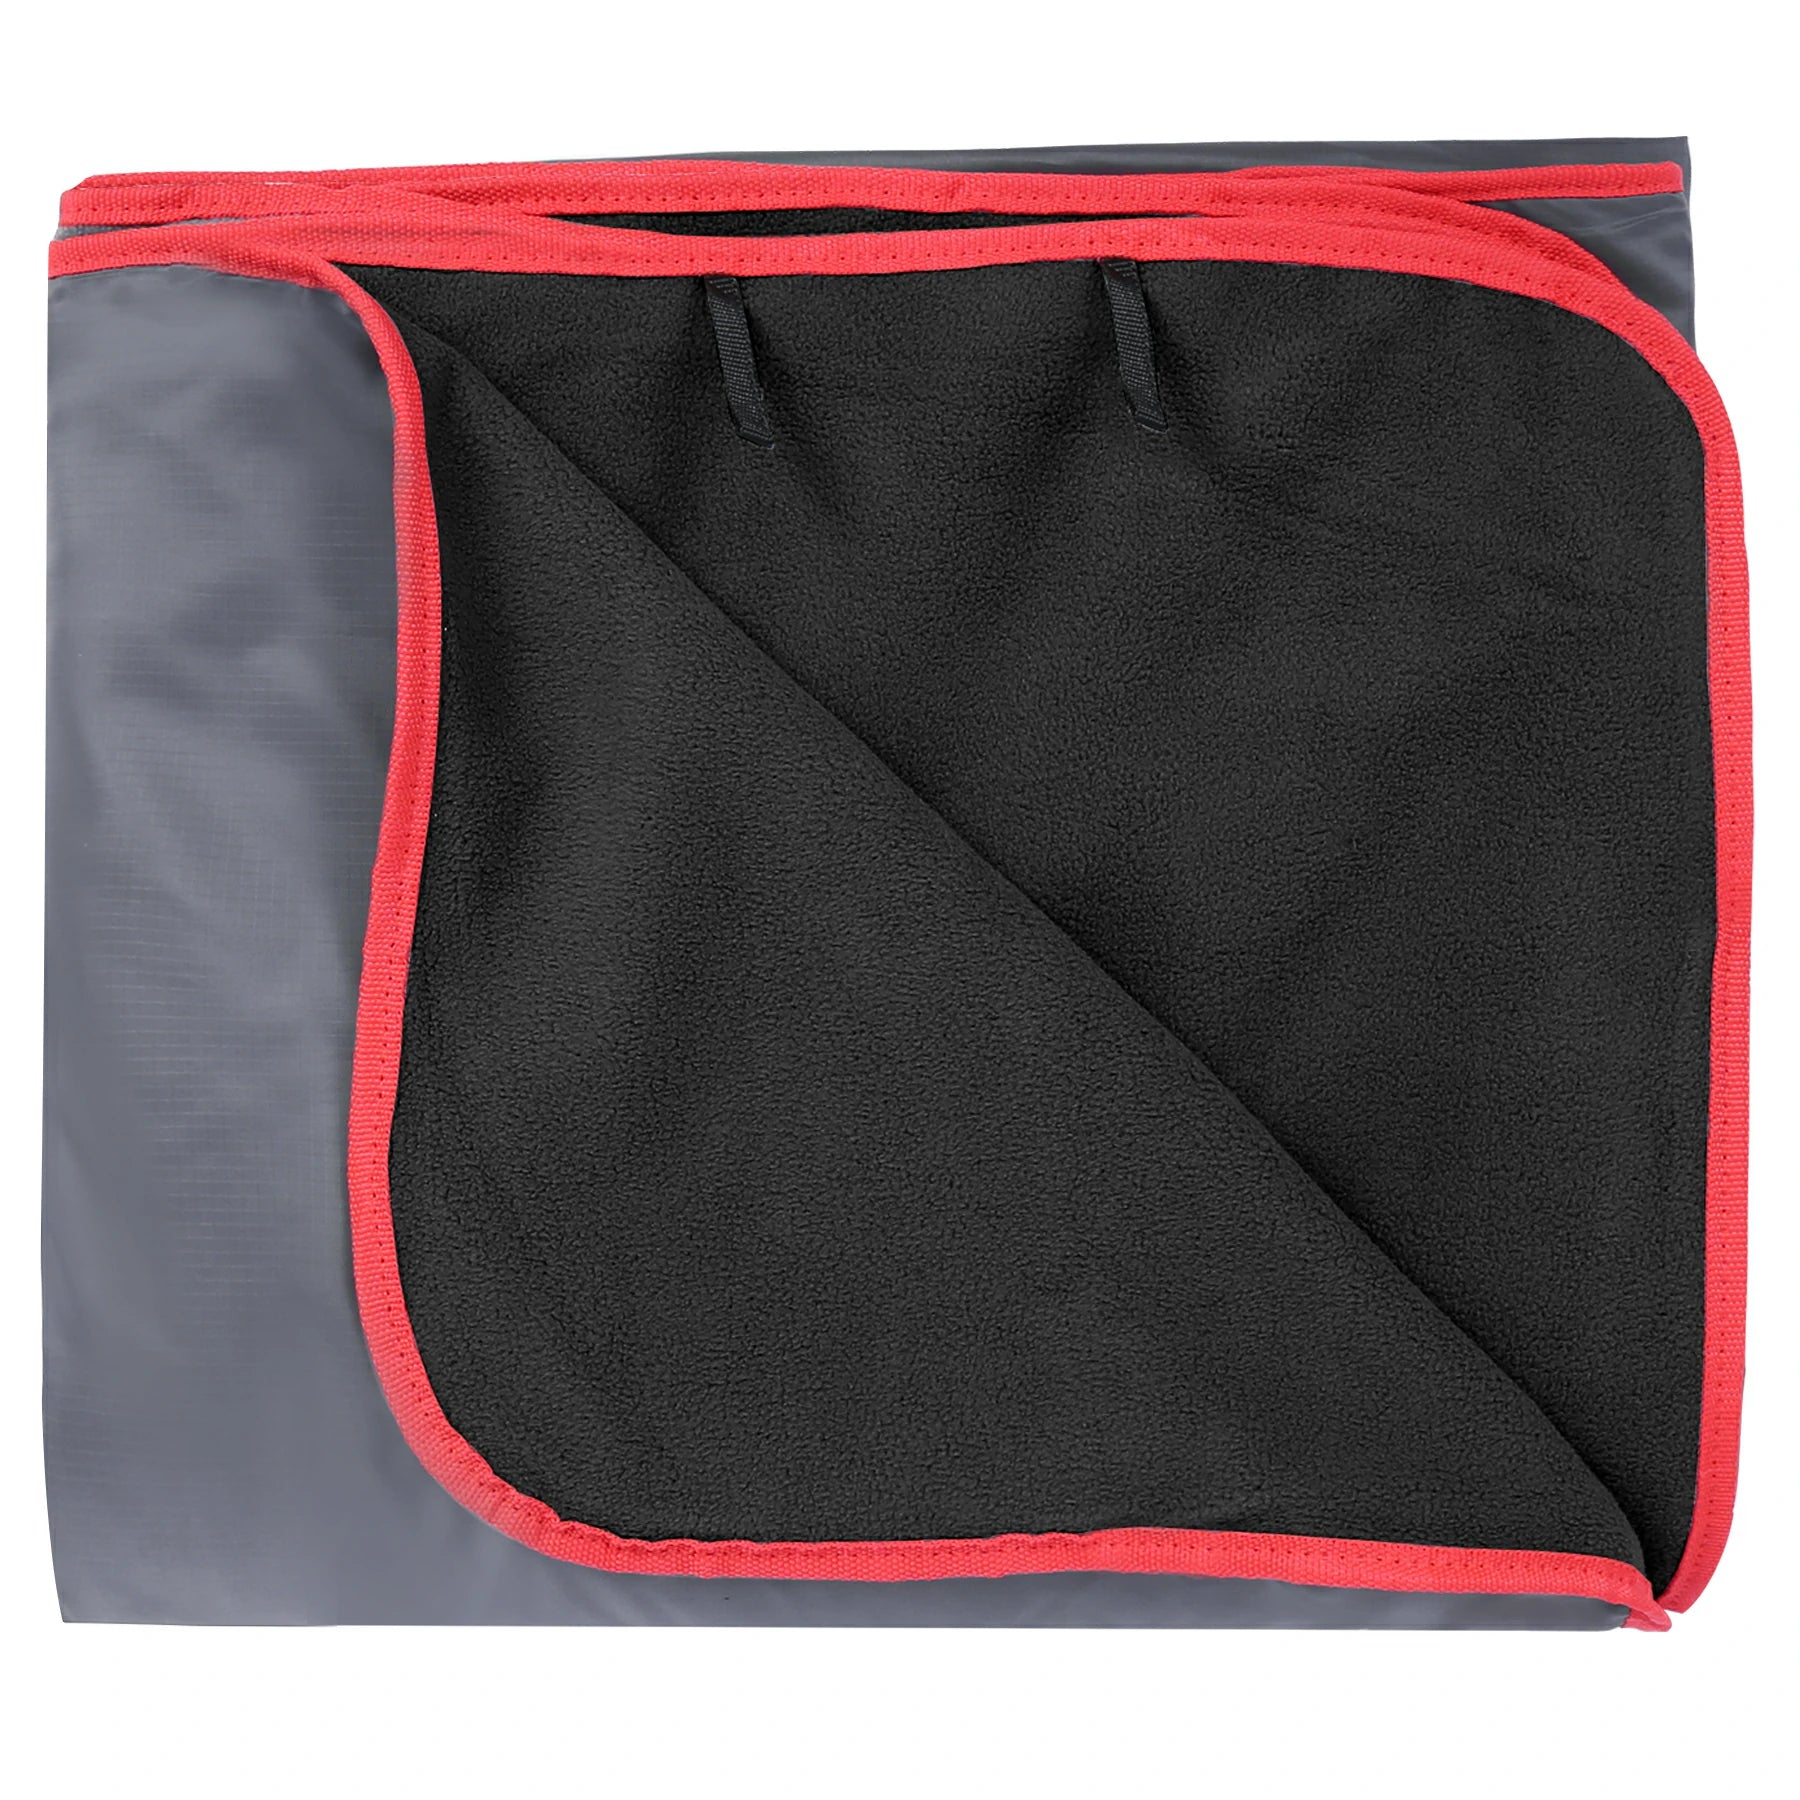 Outdoor Waterproof  Blanket with Warm Fleece